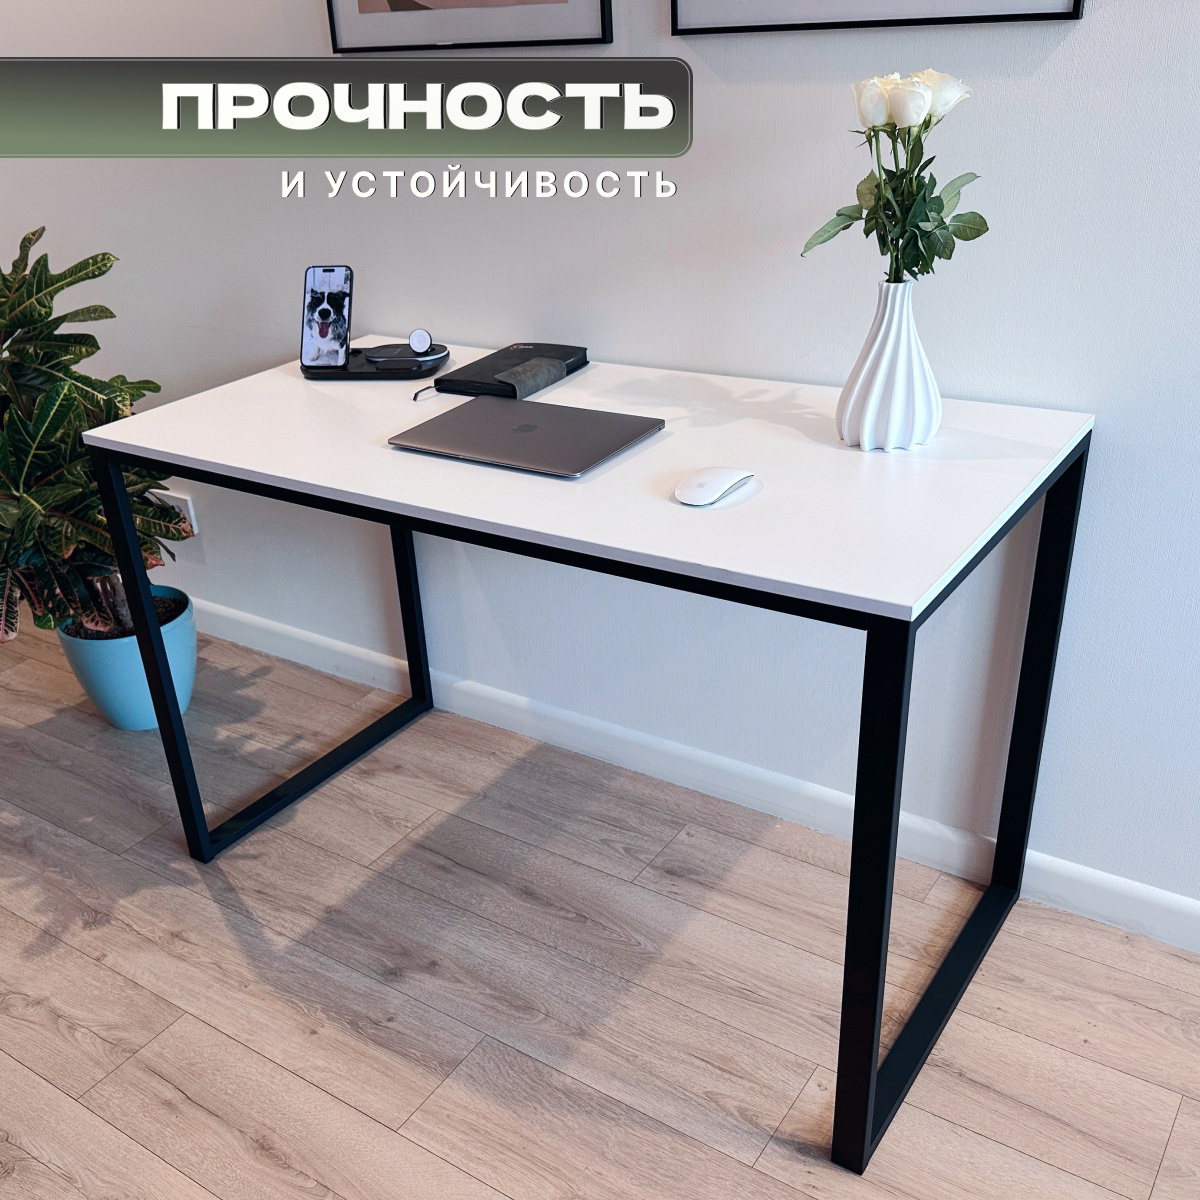 Стол письменный офисный кухонный обеденный в стиле Loft цвет Феникс 130 см